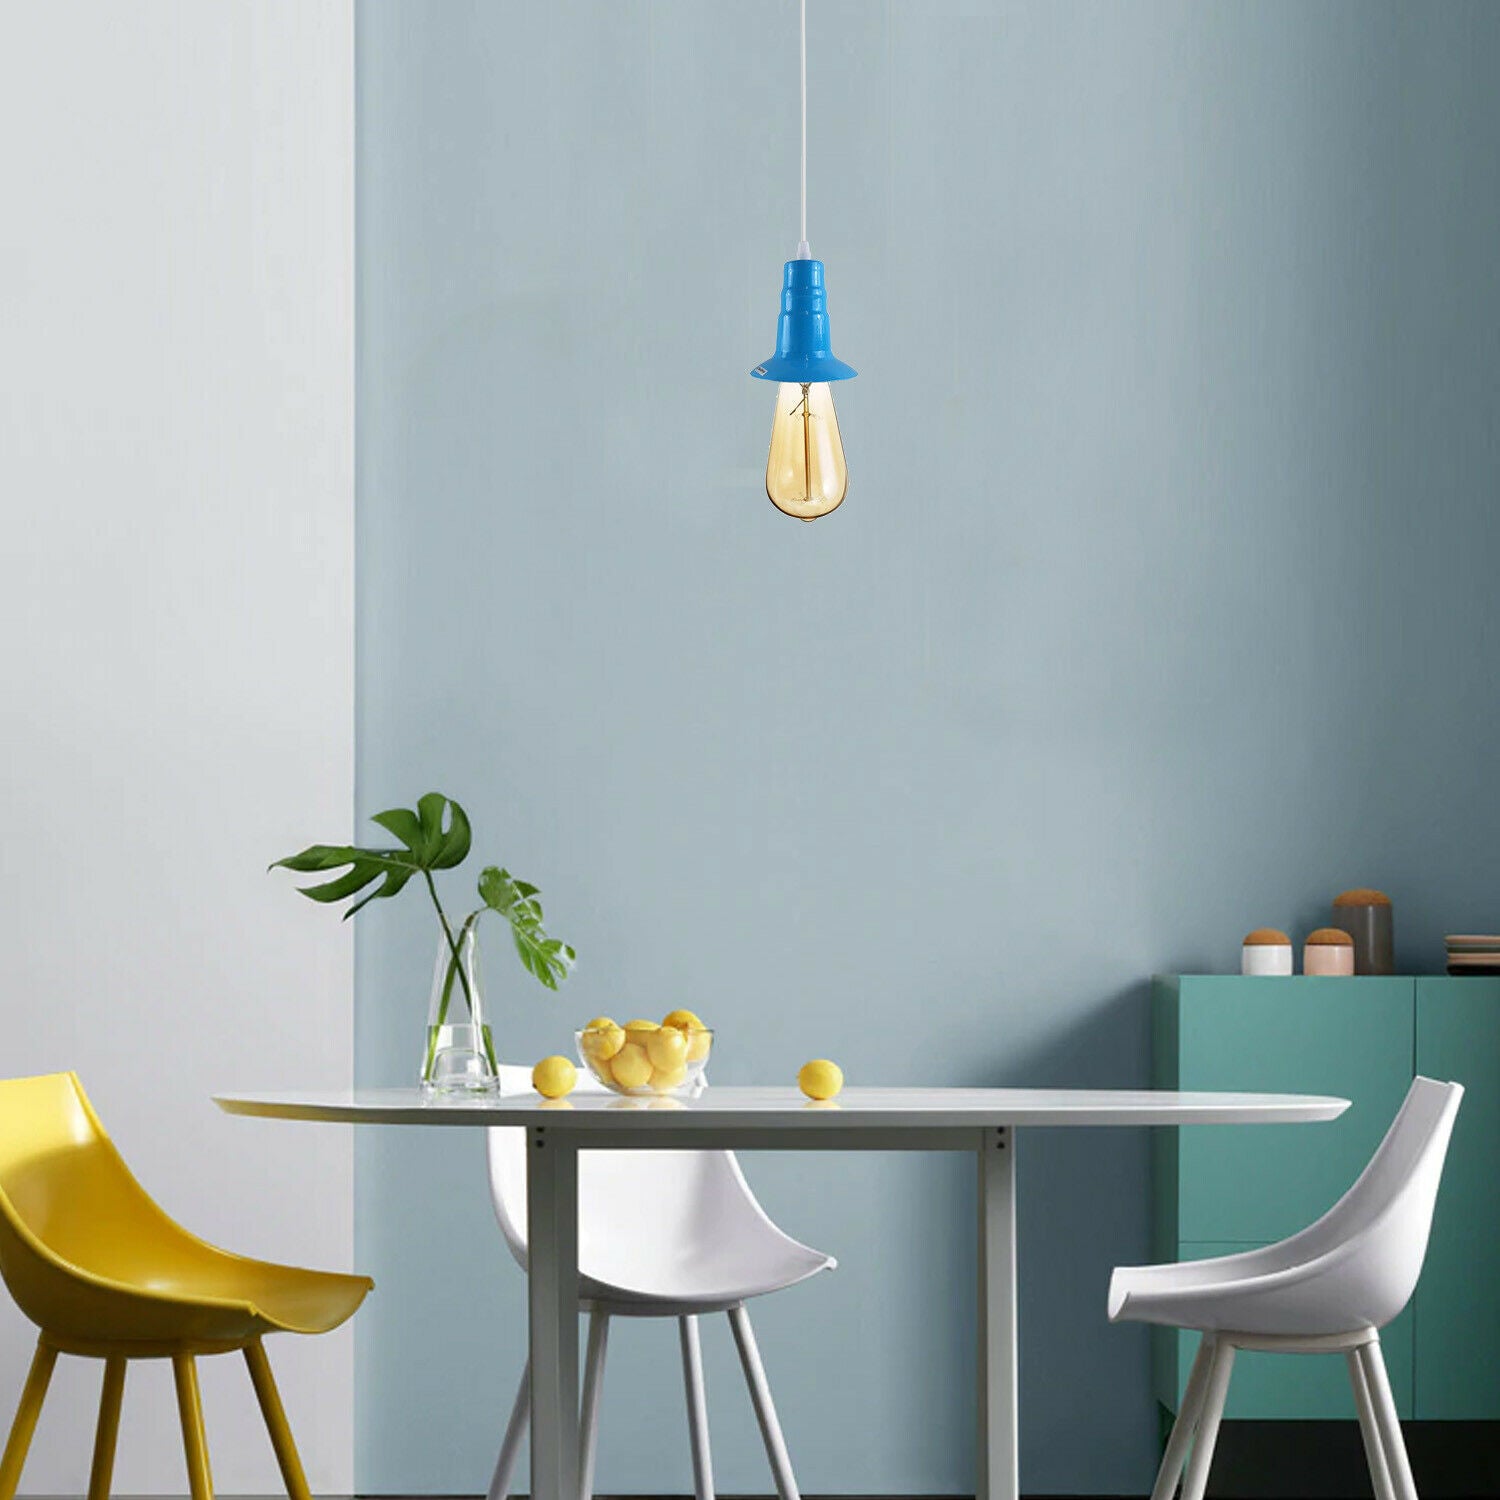 Light Blue Ceiling Light Fitting Industrial Pendant Lamp Bulb Holder~1681 - LEDSone UK Ltd